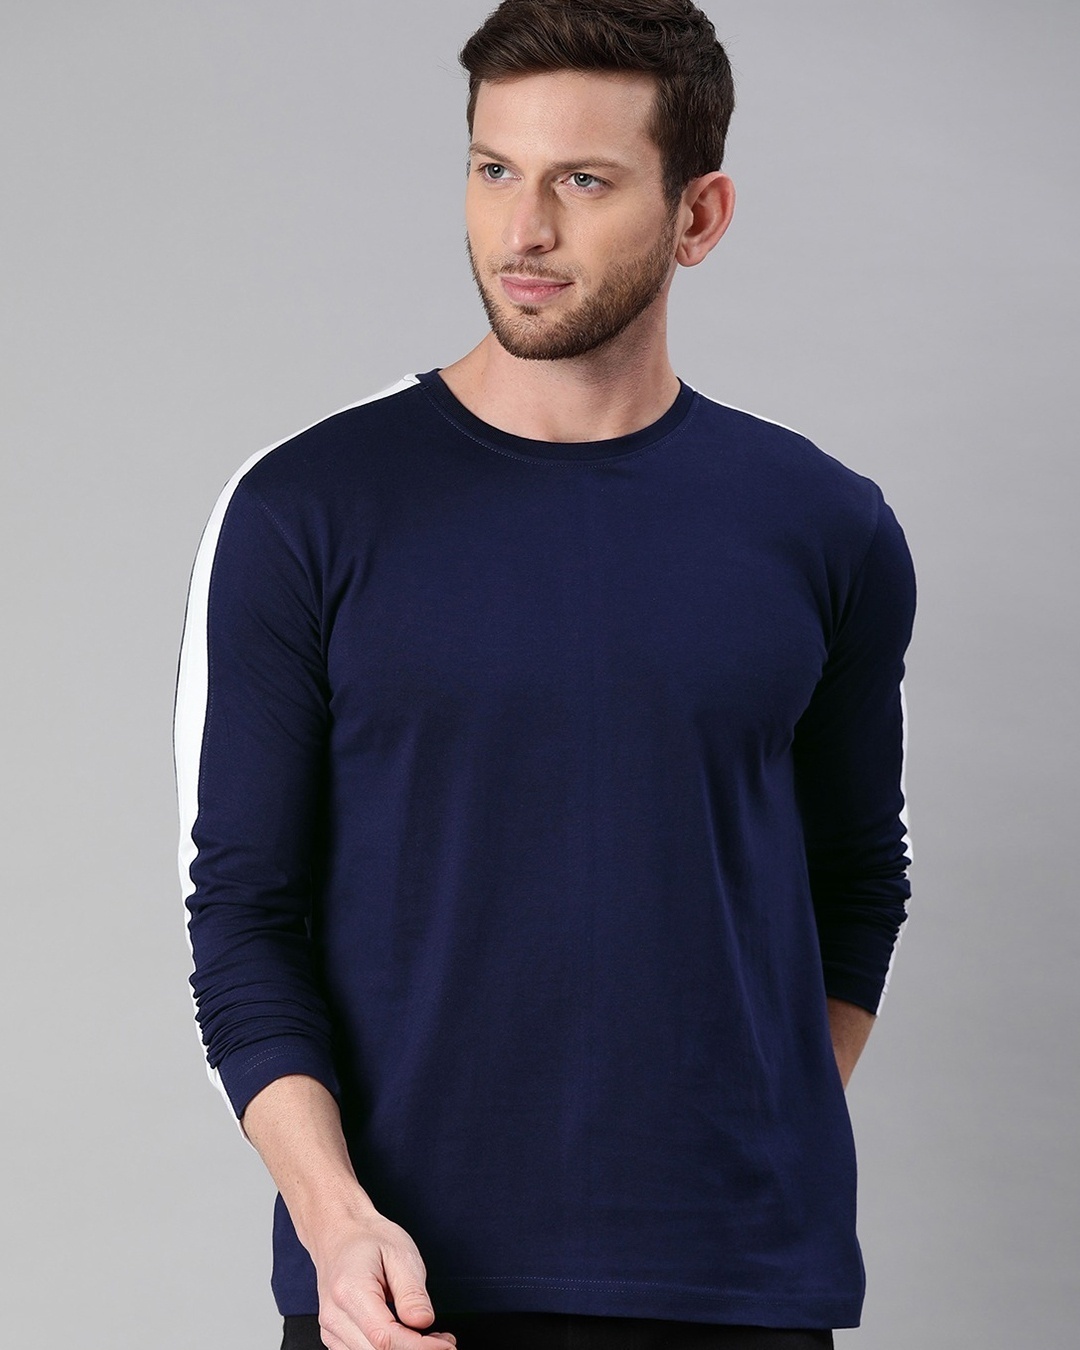 Buy Men's Navy Blue Full Sleeve T-shirt (White Stripe) for Men Blue ...